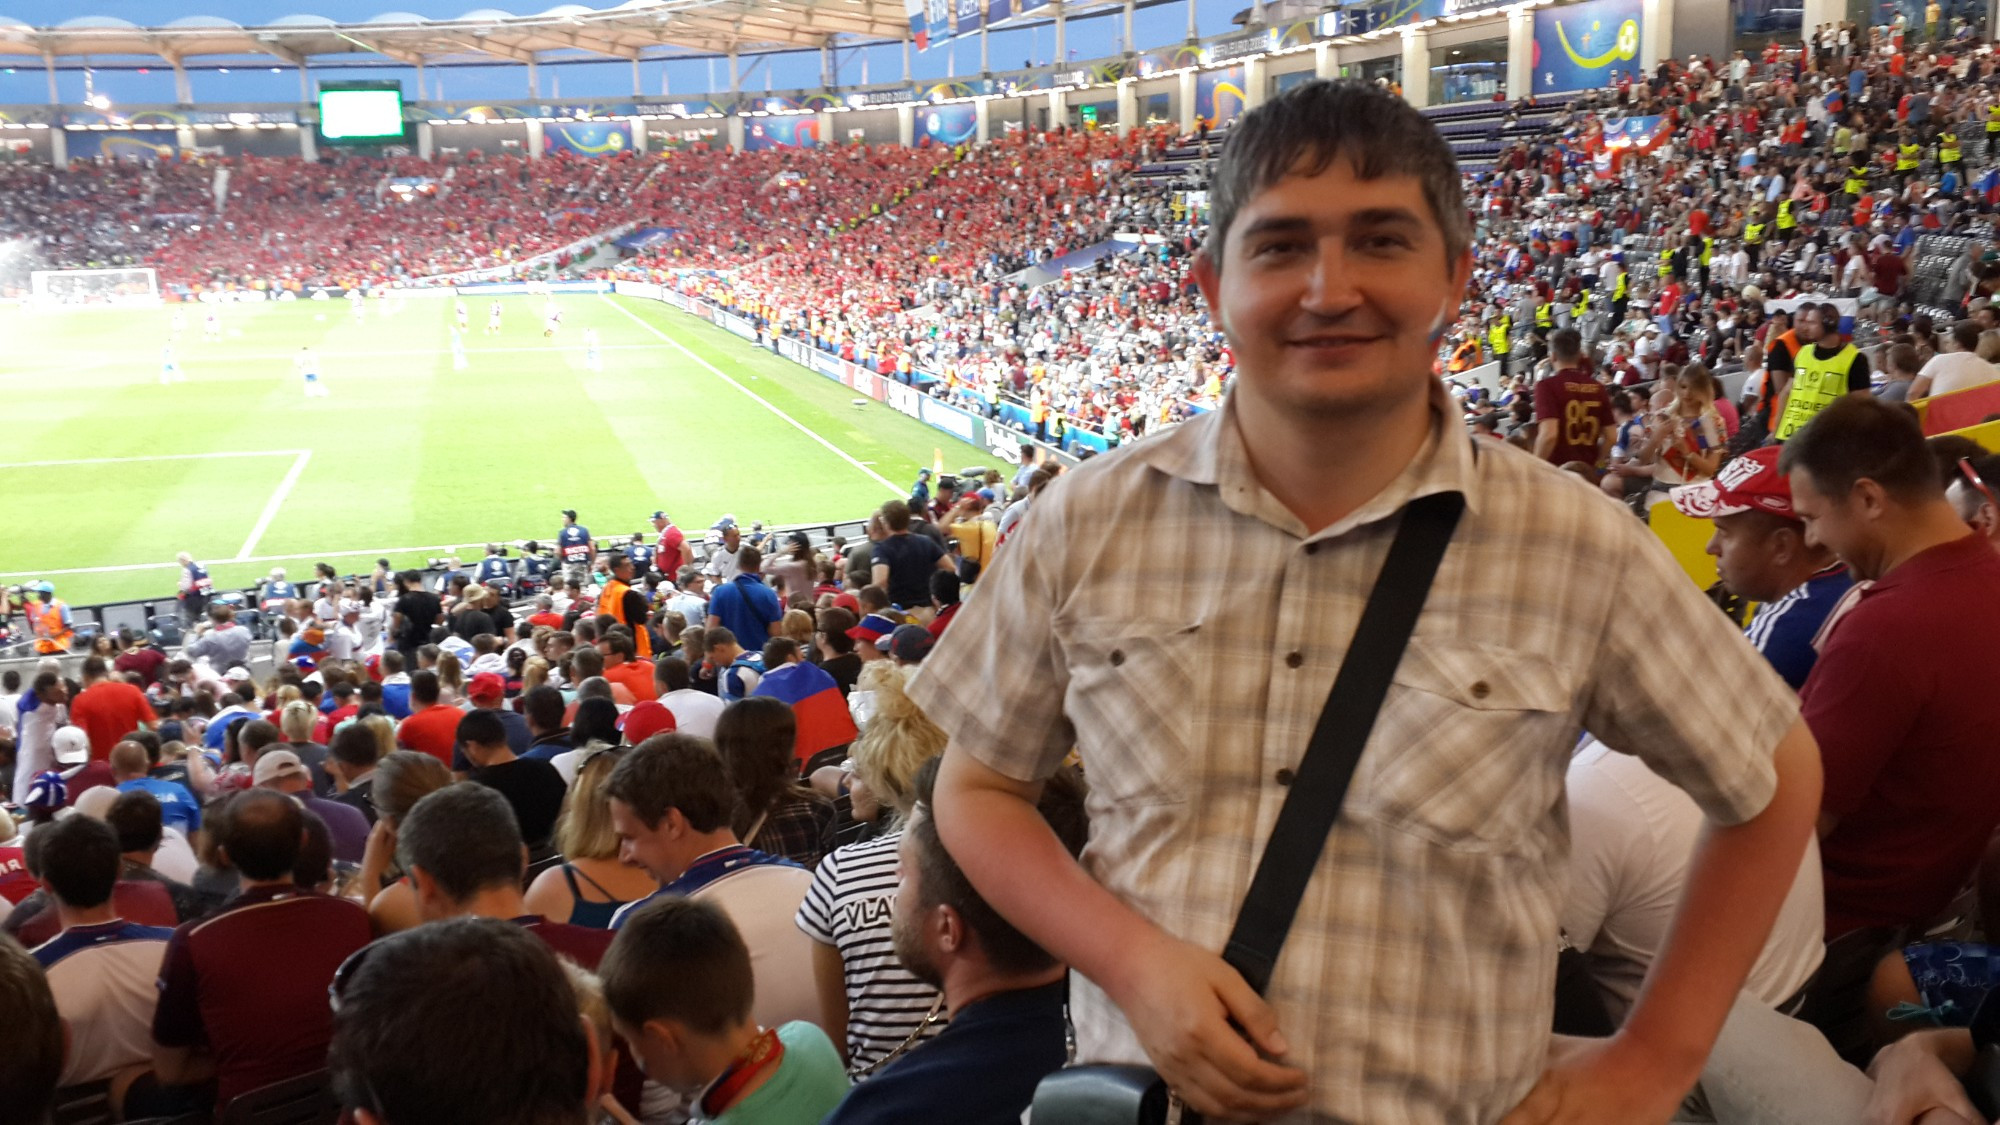 Тулуза. На стадионе перед матчем Россия — Уэльс. (20.06.2016)